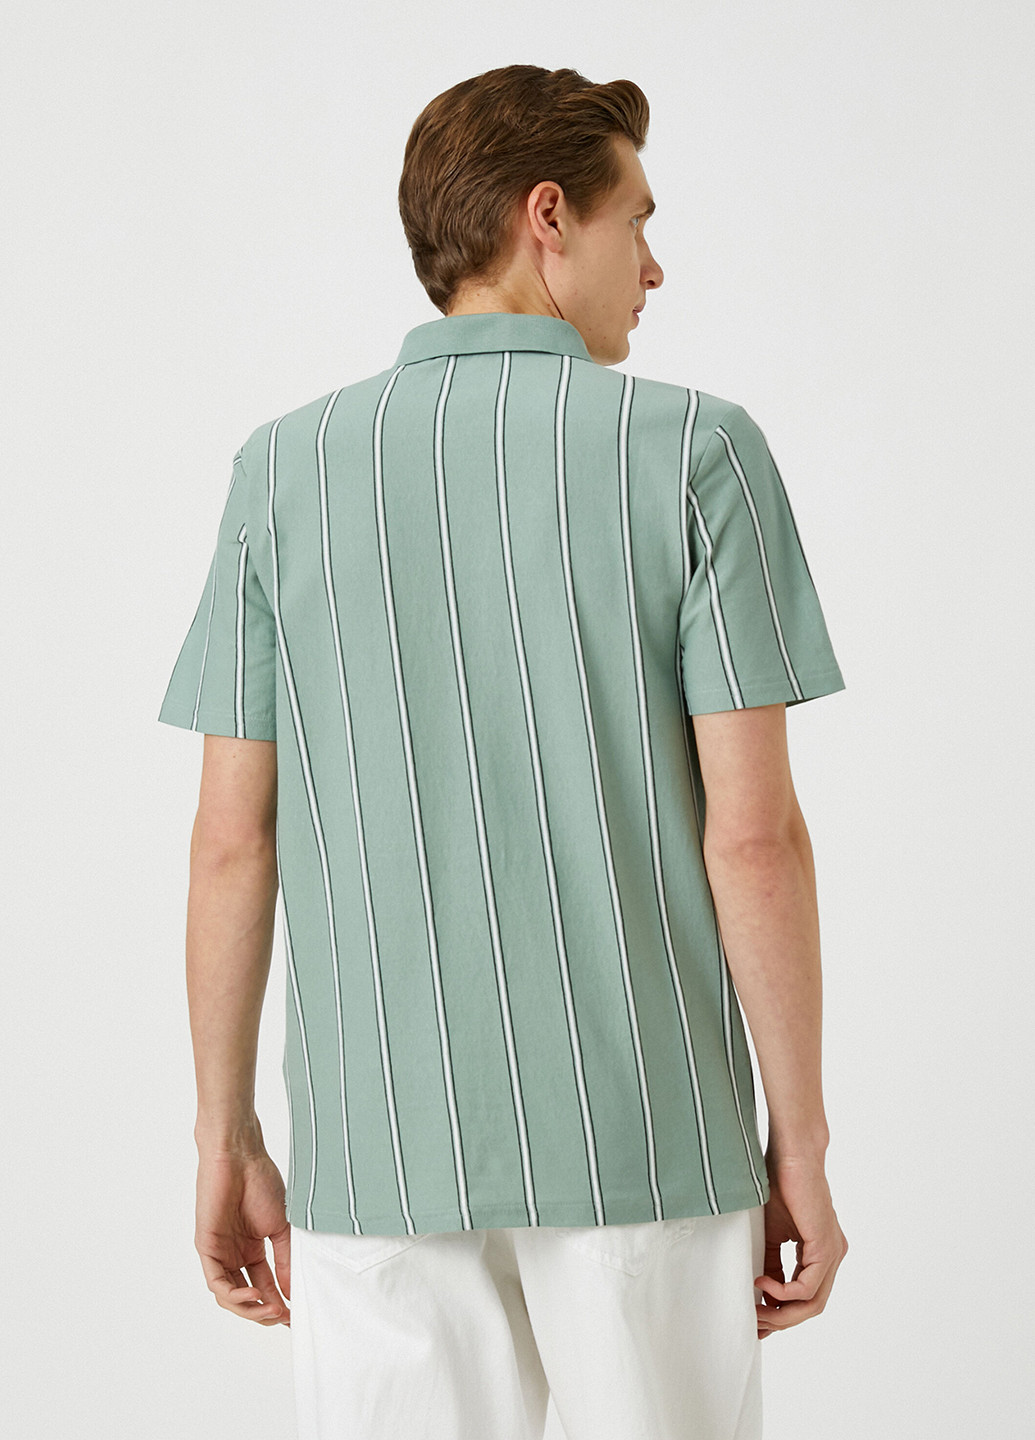 Светло-зеленая футболка-поло для мужчин KOTON в полоску